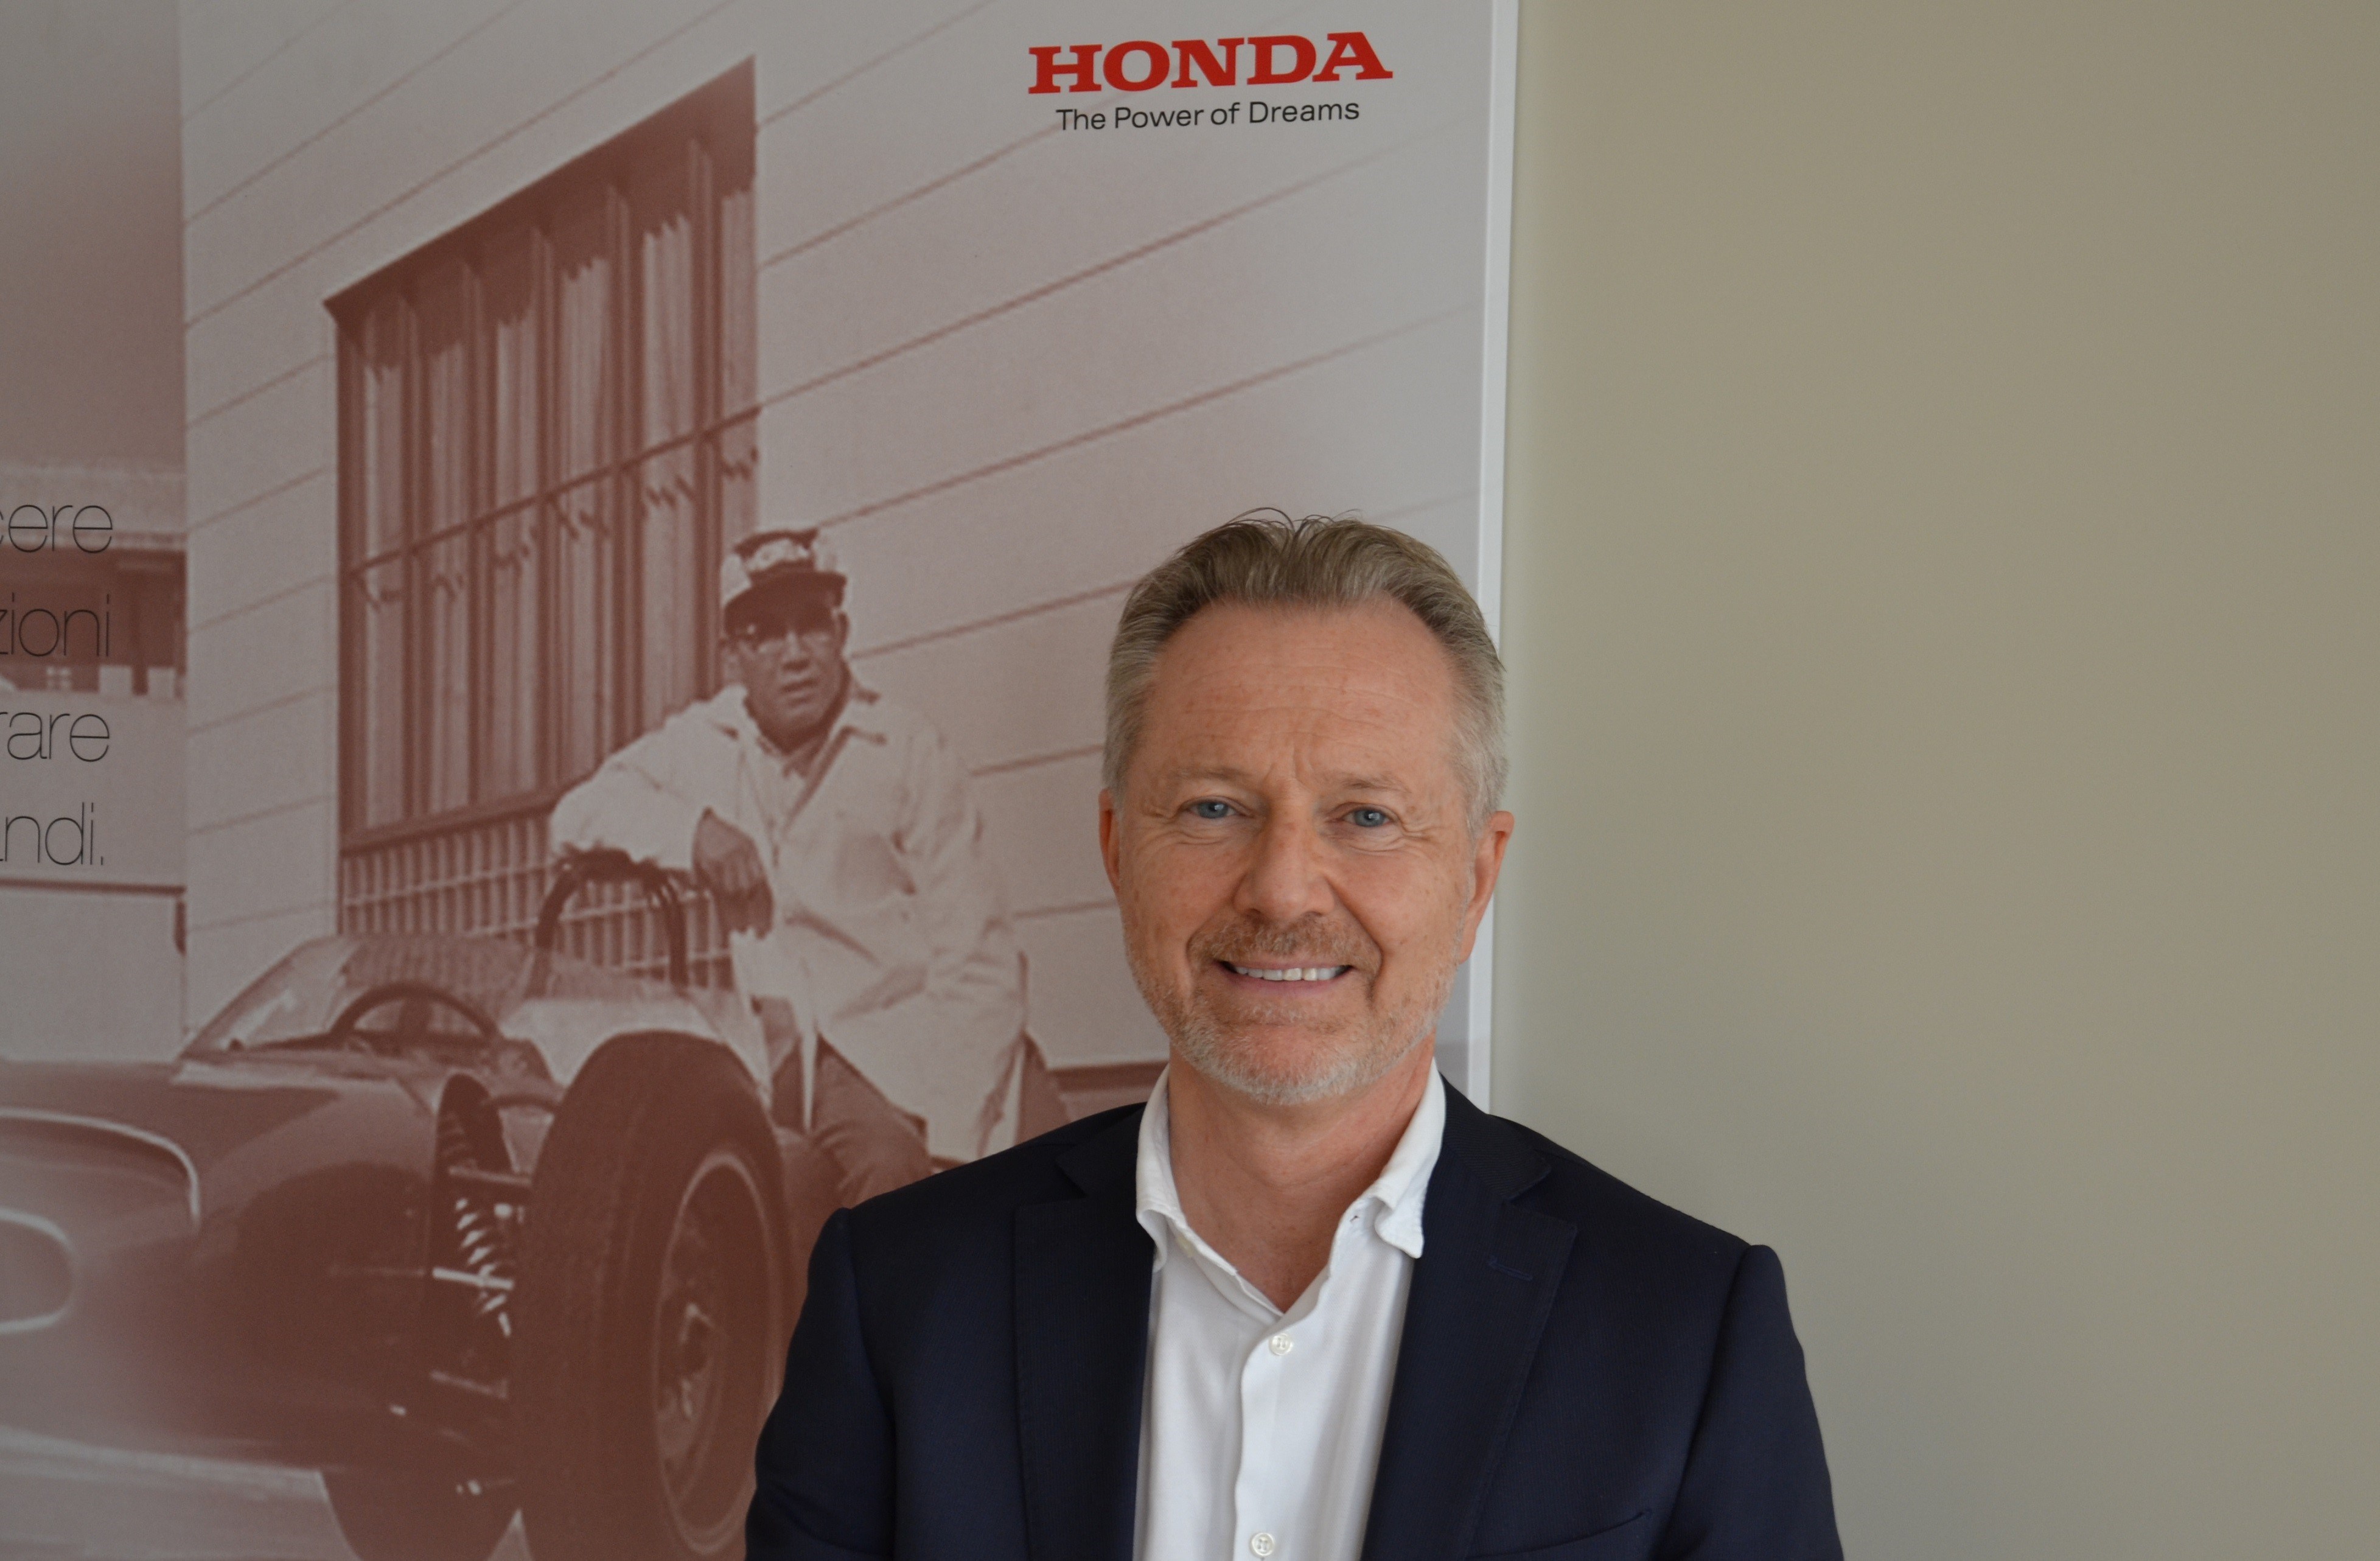  Alessandro Skerl è il nuovo Direttore Vendite Honda Motor Europe